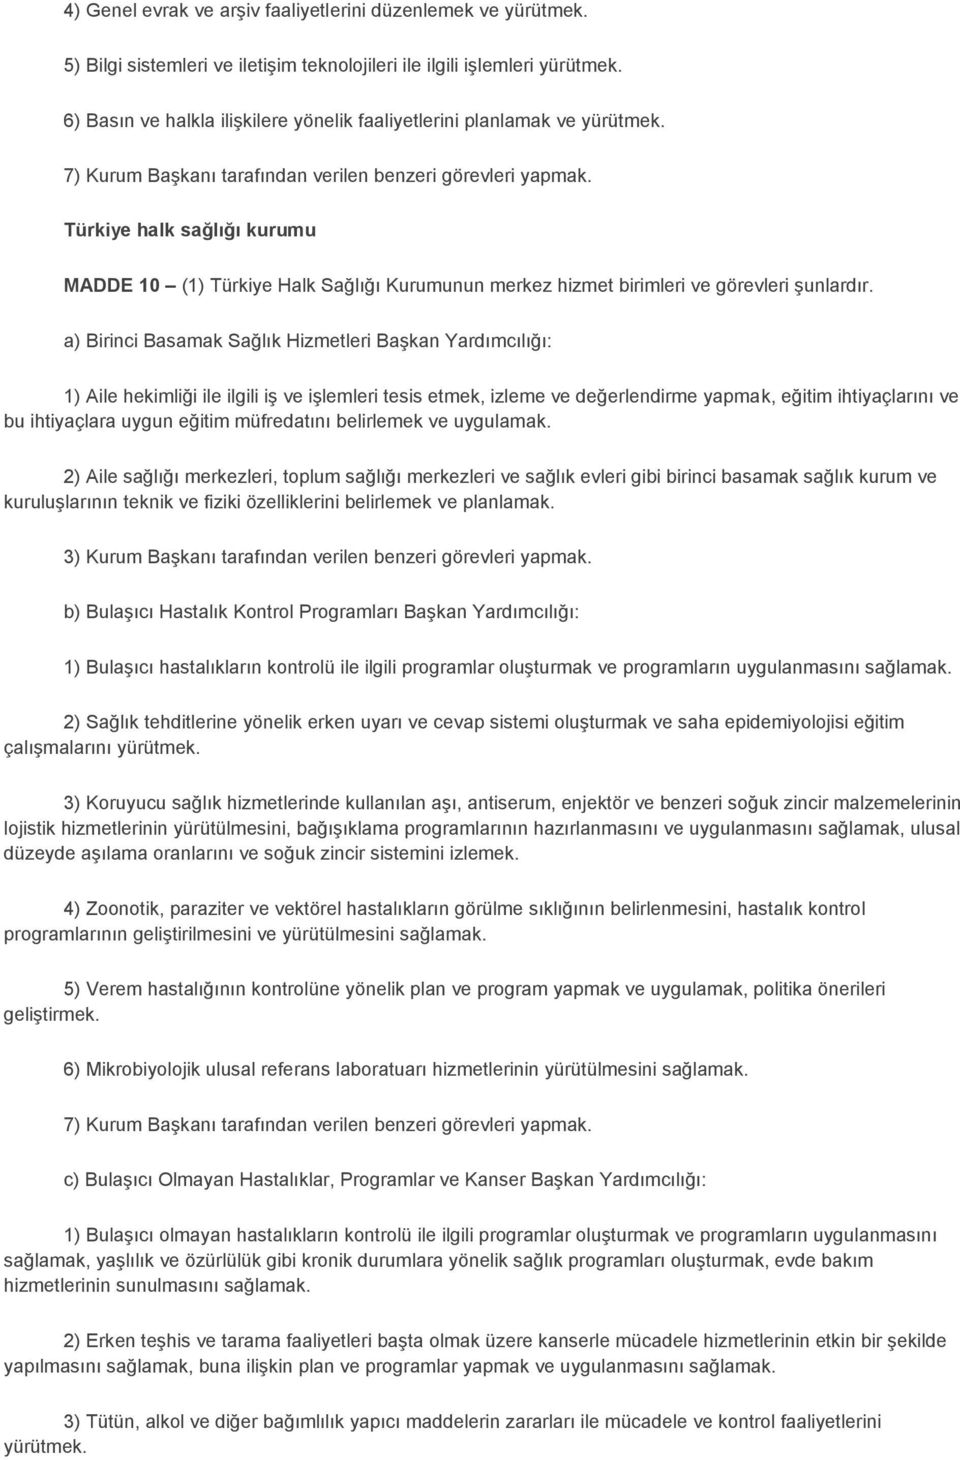 Türkiye halk sağlığı kurumu MADDE 10 (1) Türkiye Halk Sağlığı Kurumunun merkez hizmet birimleri ve görevleri şunlardır.